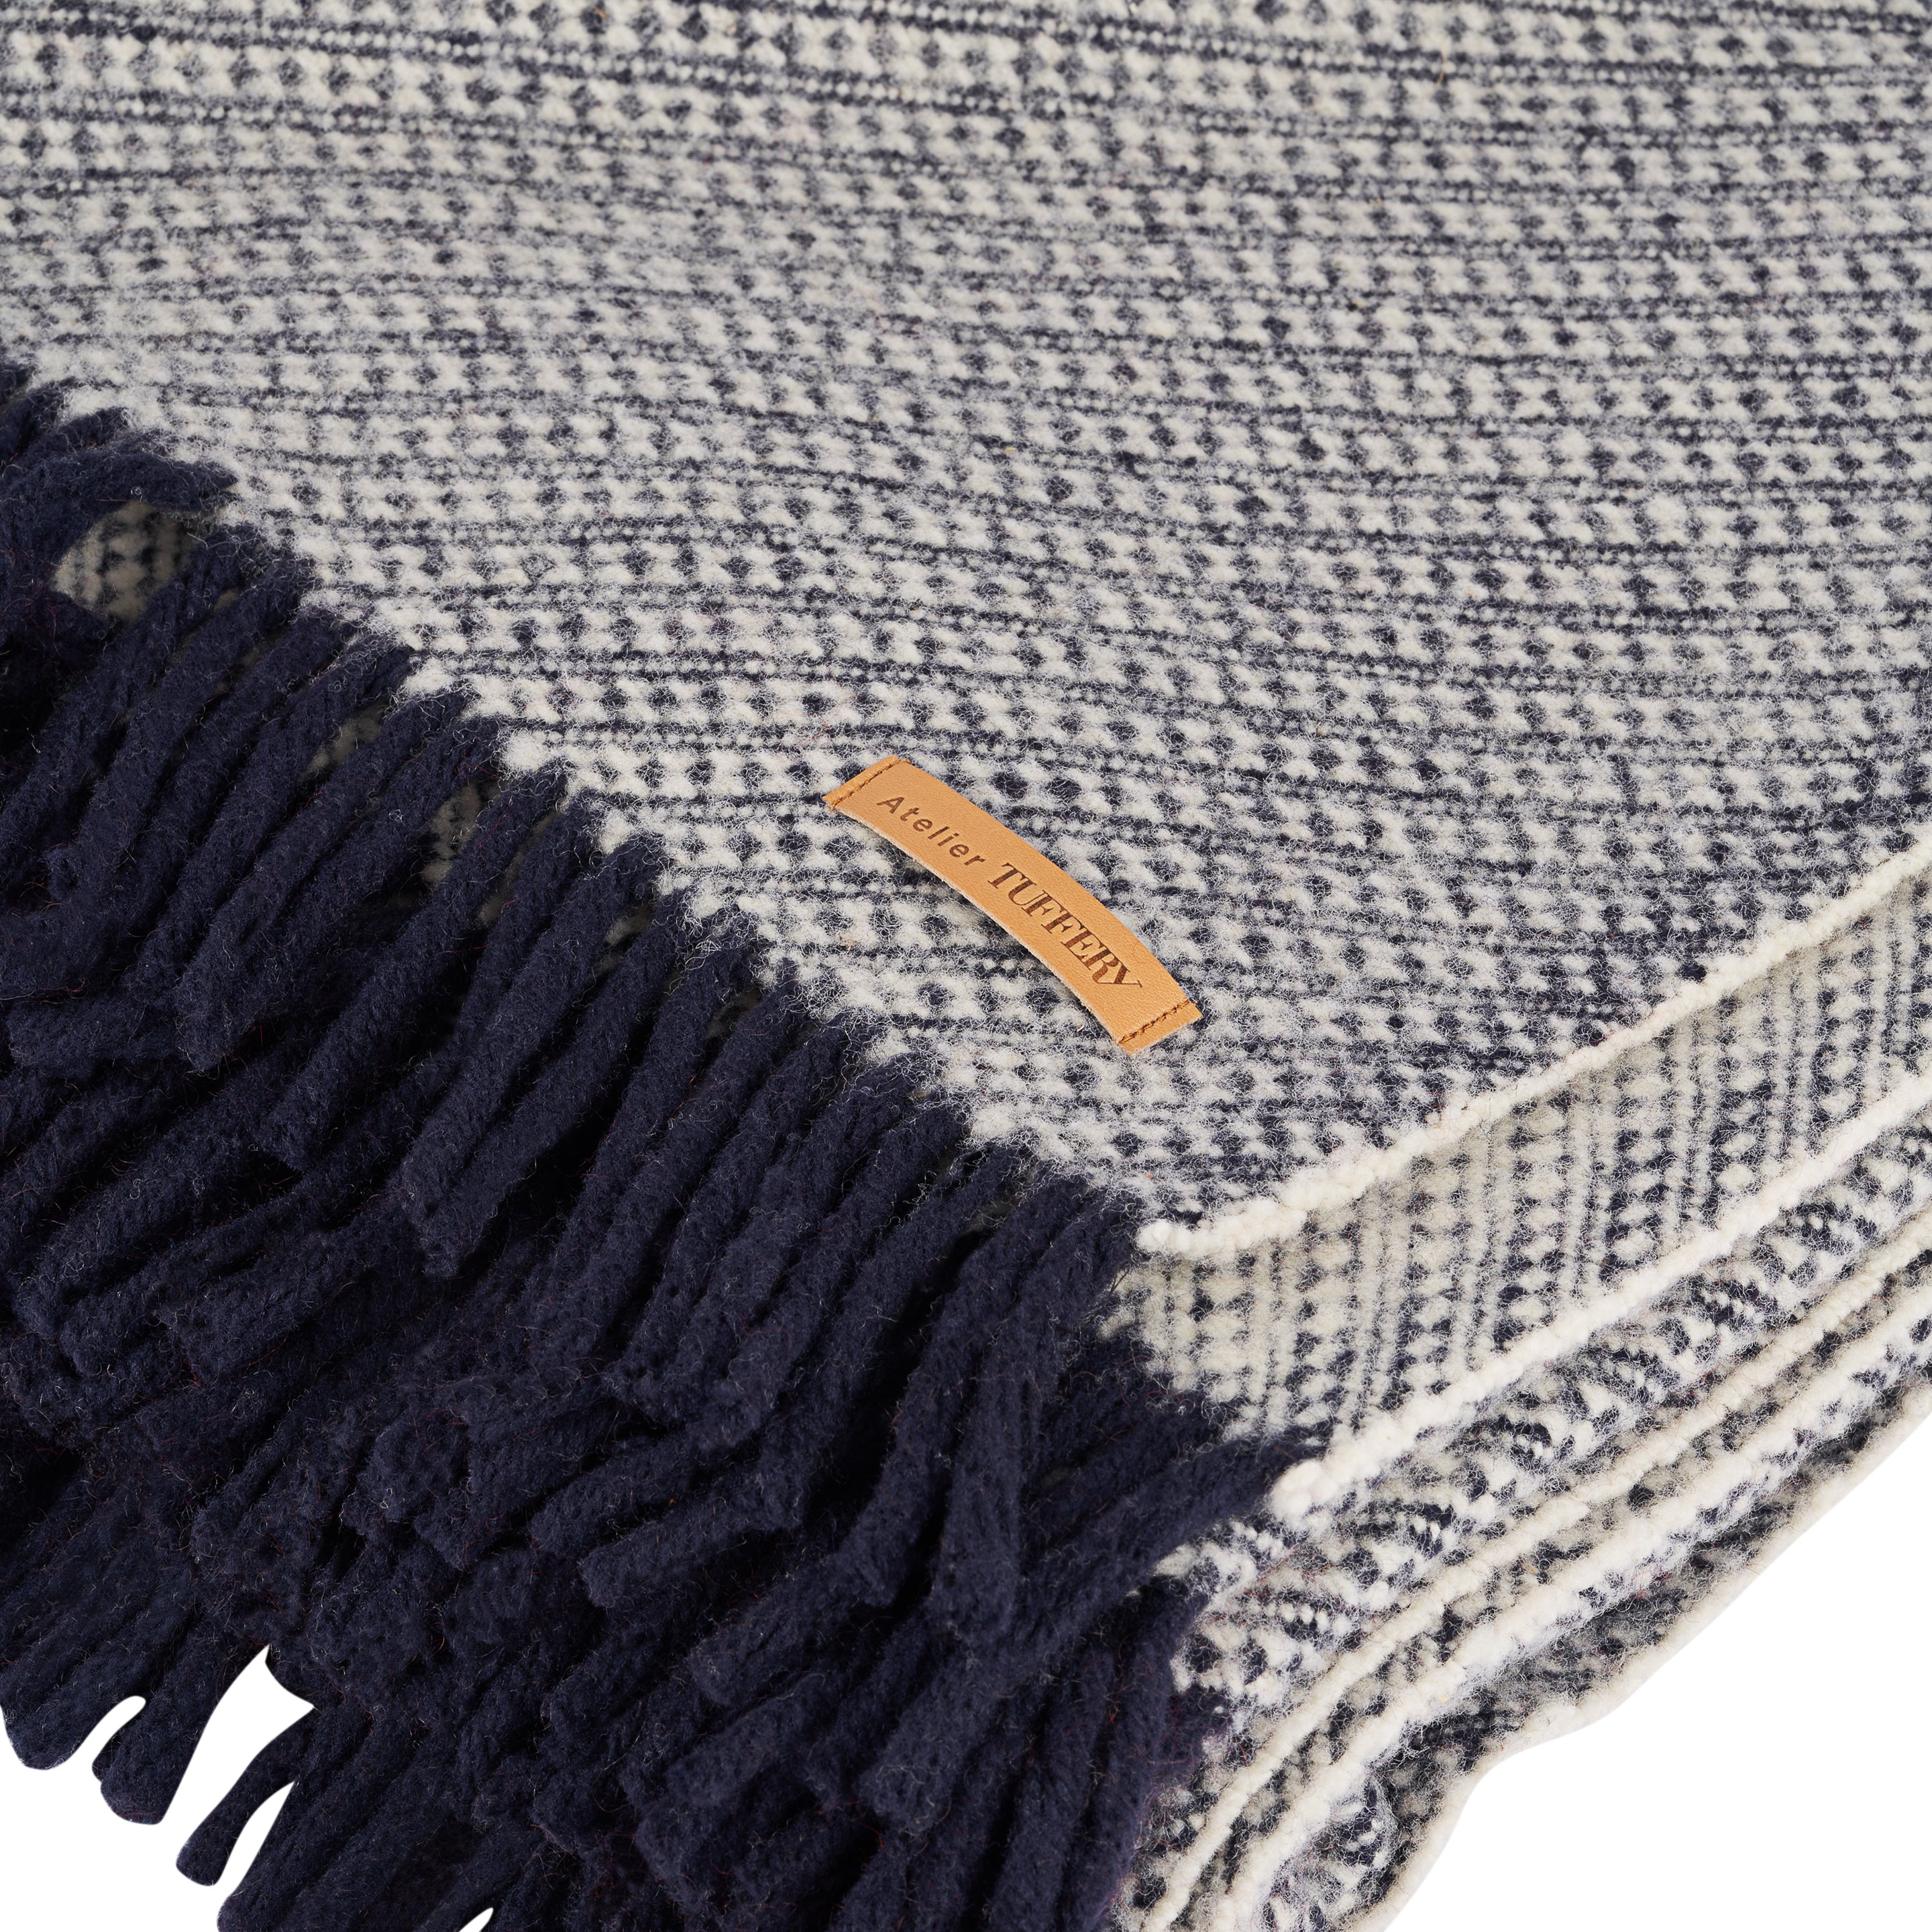 Grosse laine à tricoter – tout savoir sur nos fils naturels